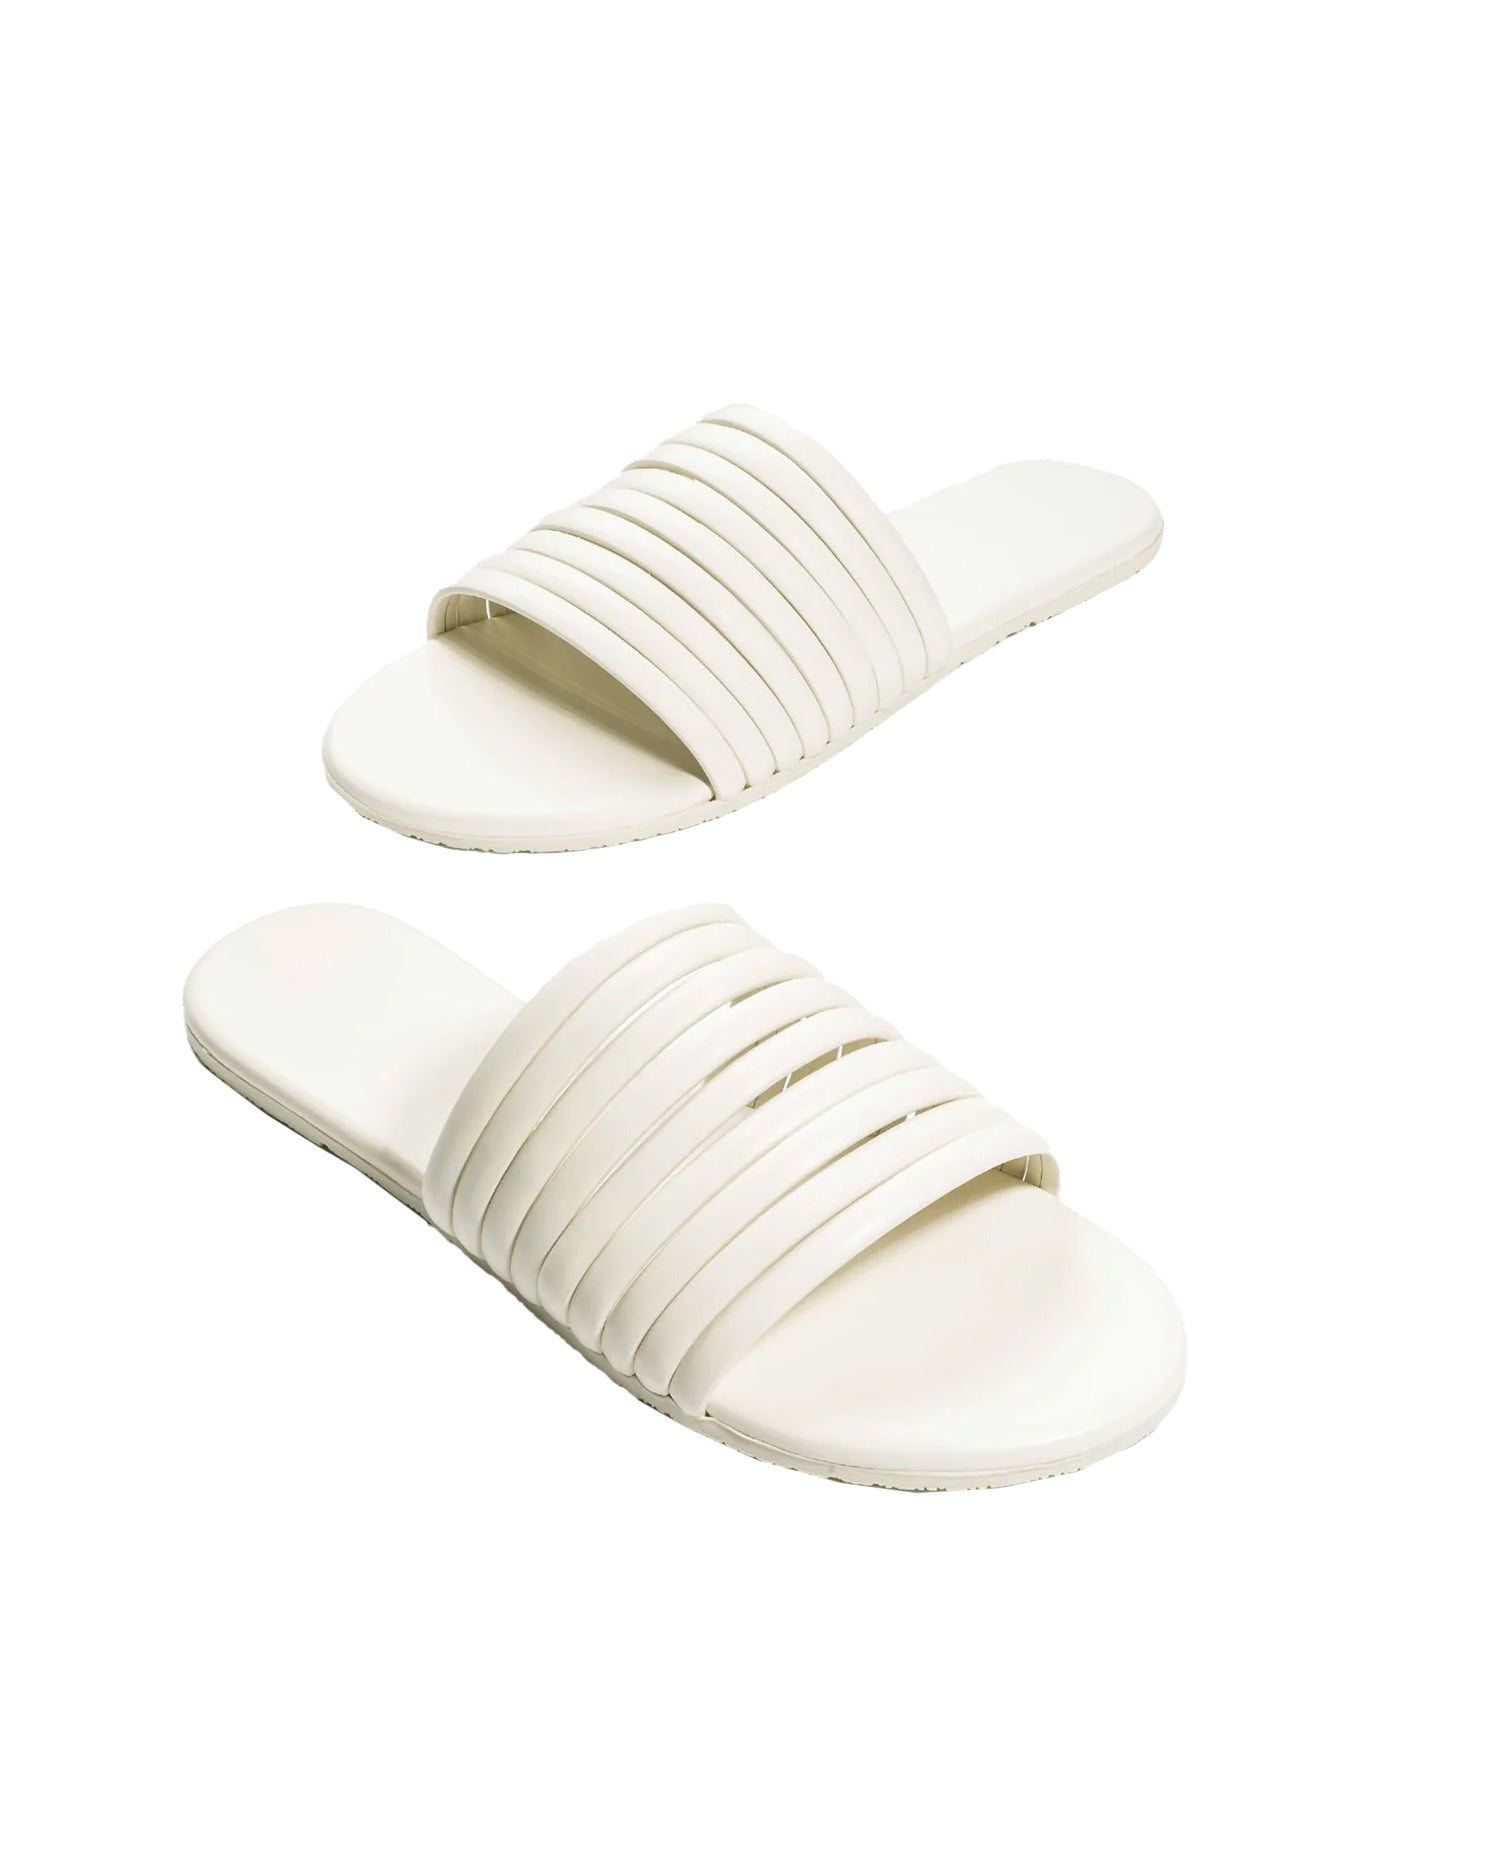 Caro Sandals (Cream)